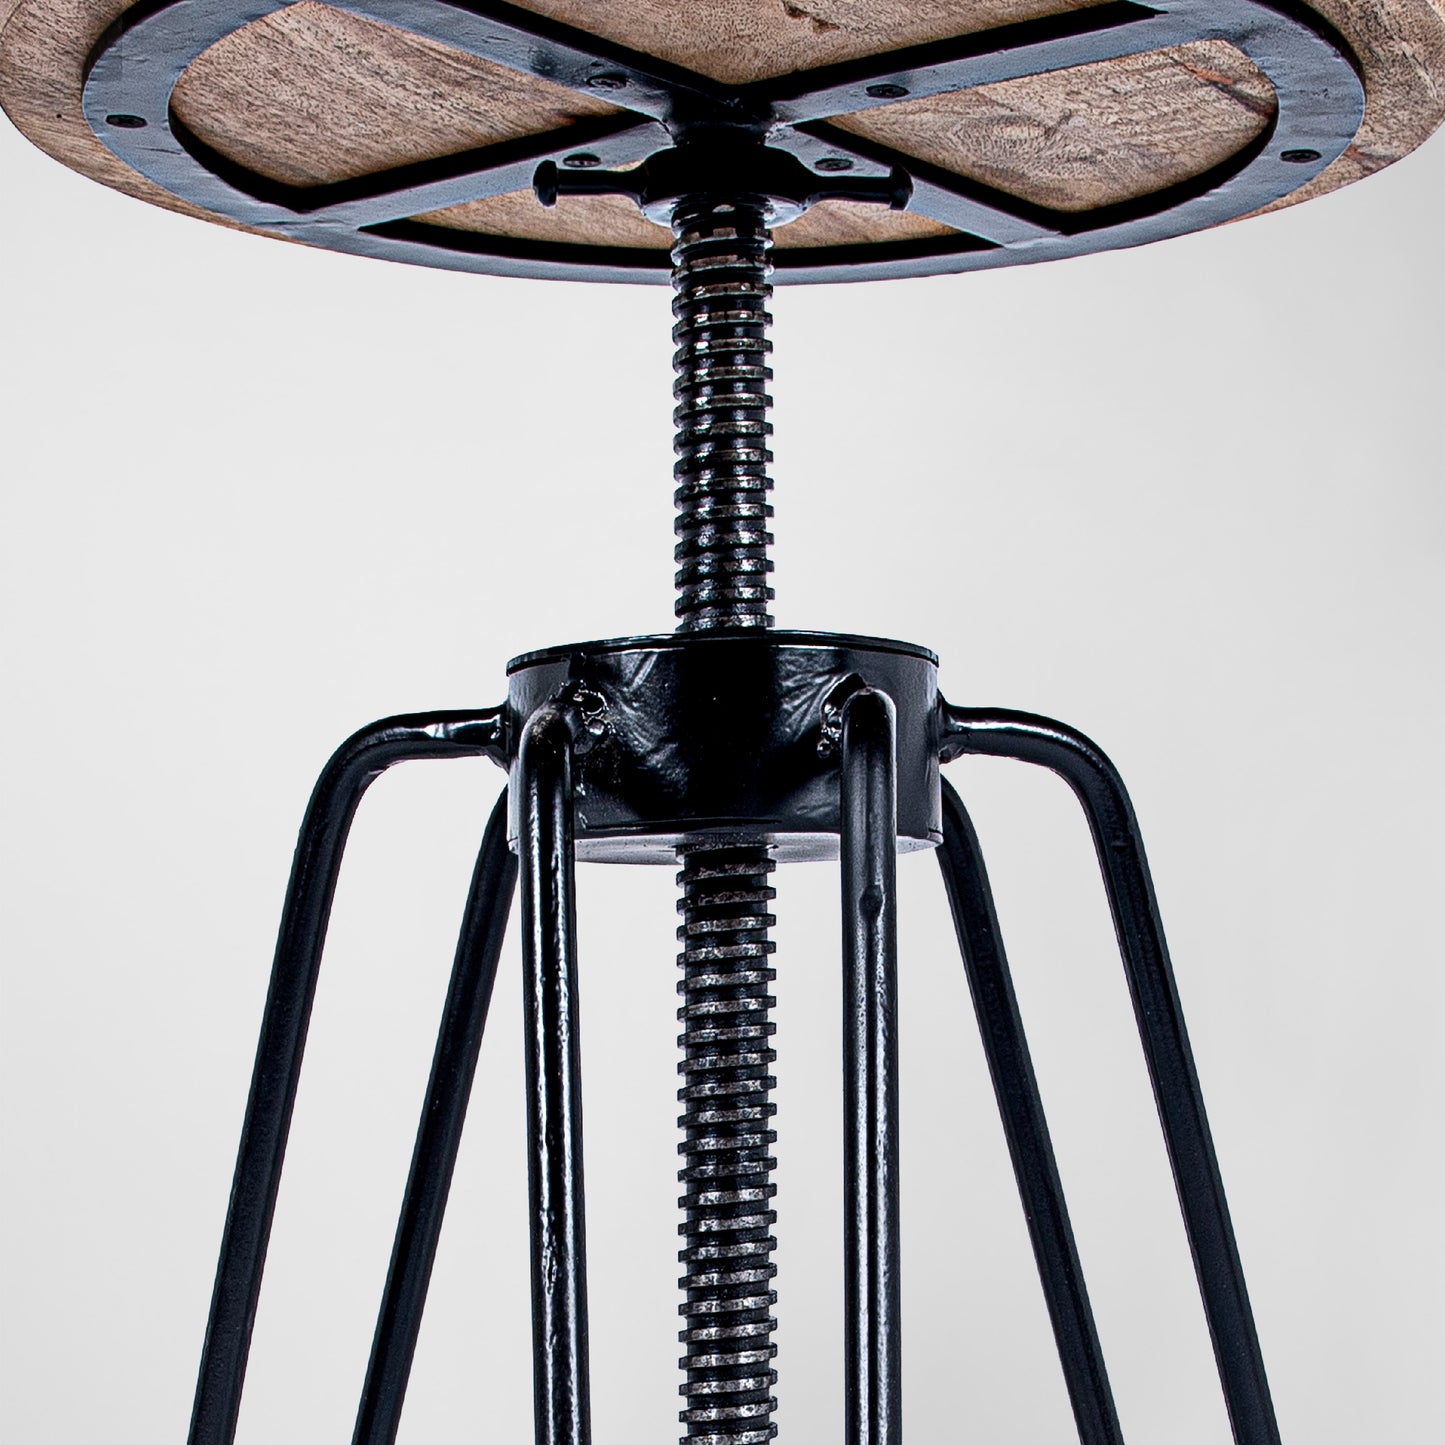 HairPin 102 – Handmade Industrie-Design Dreh-Hocker aus Metall mit Holzsitz in schwarz und kupfer